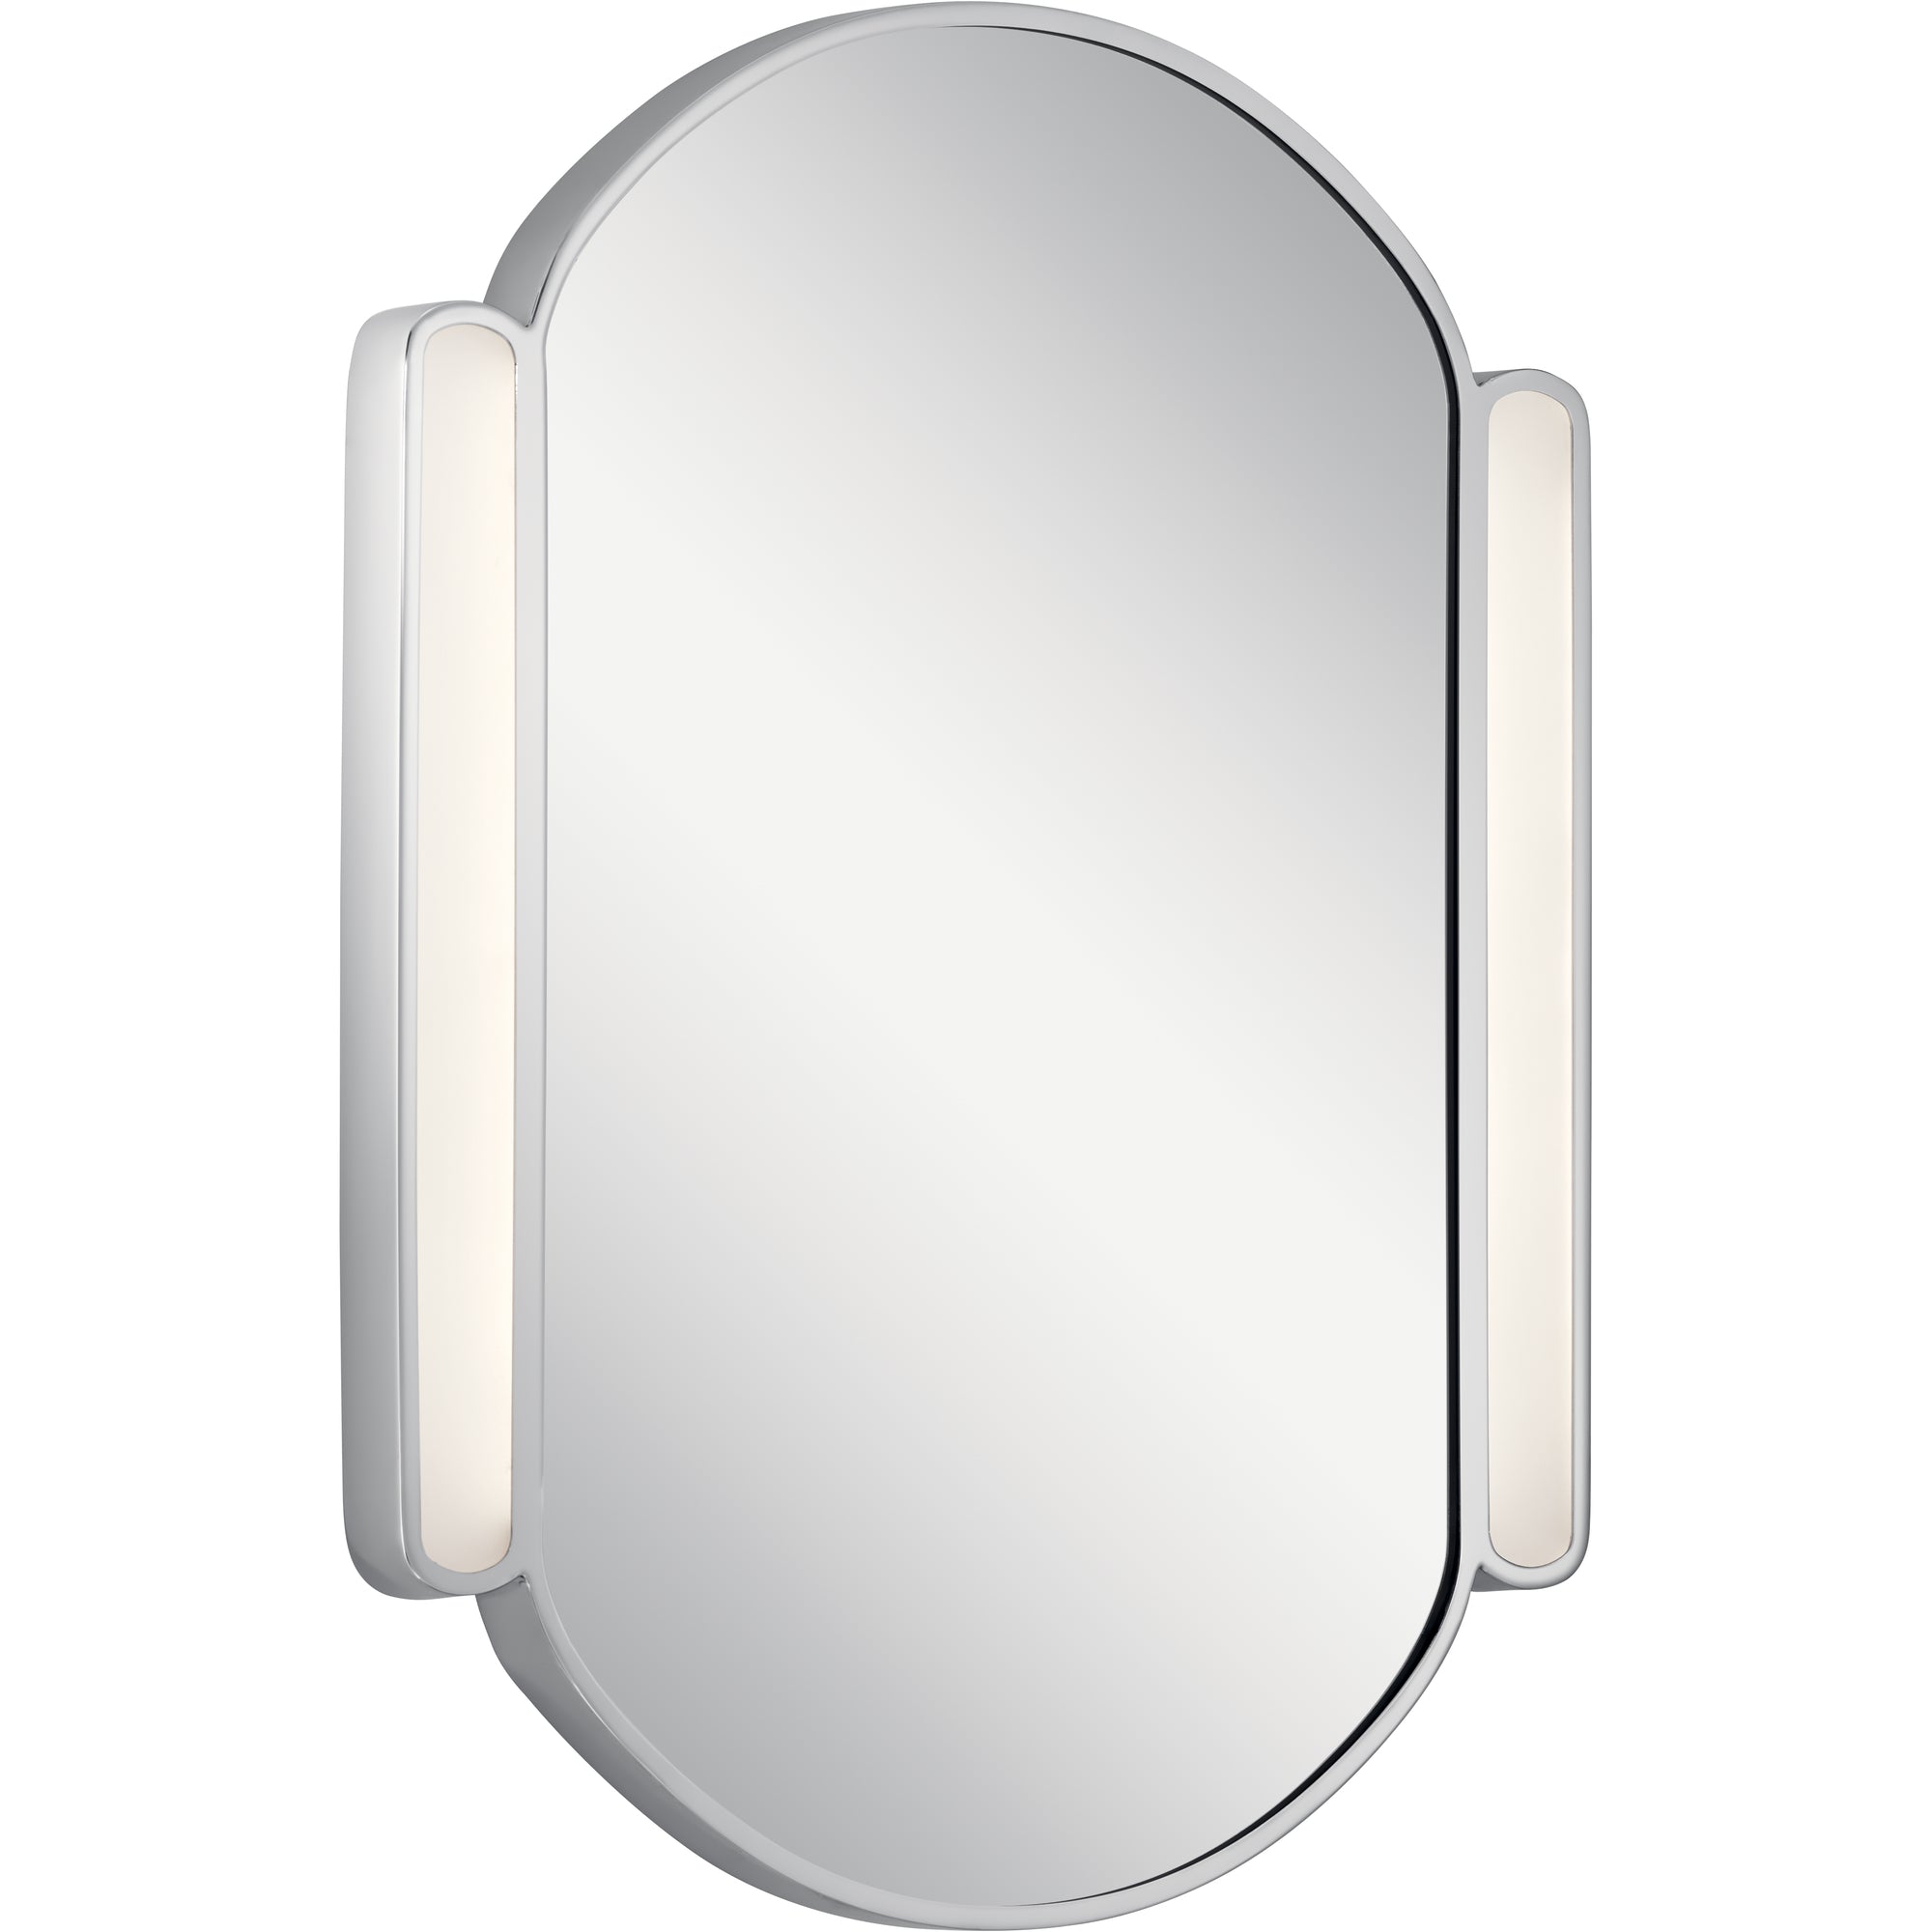 PHAELAN Lighting mirror Chrome - 84165 | ELAN